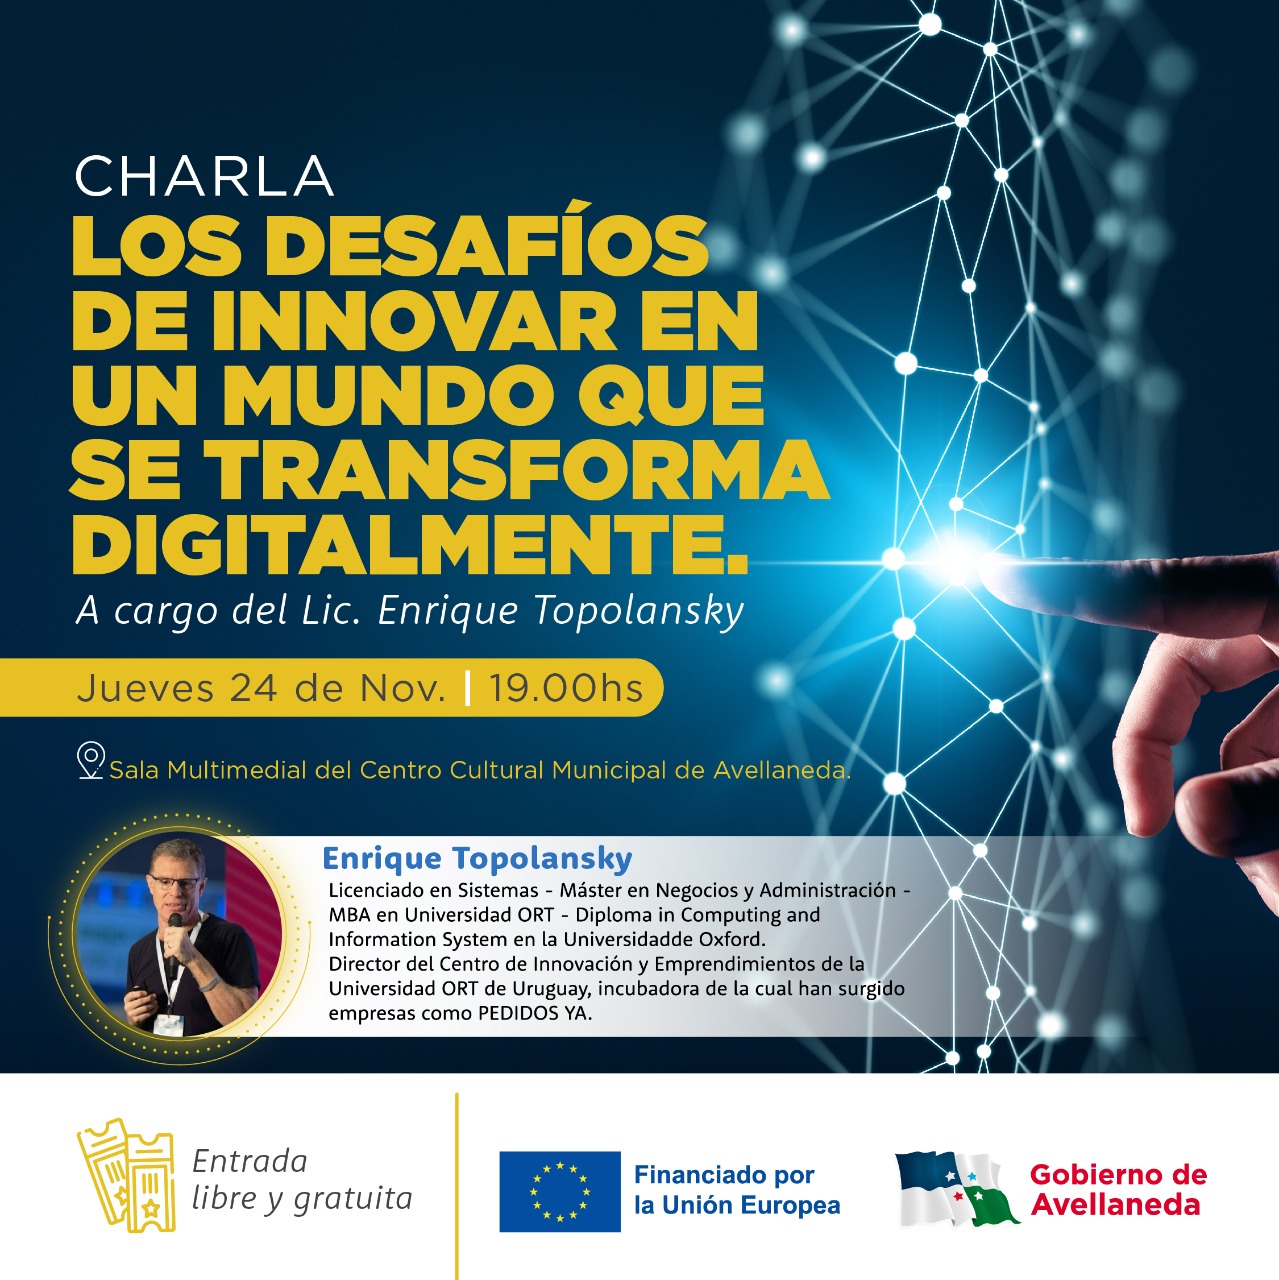 Avellaneda invita a la charla gratuita “Los desafíos de innovar en un mundo que se transforma digitalmente”